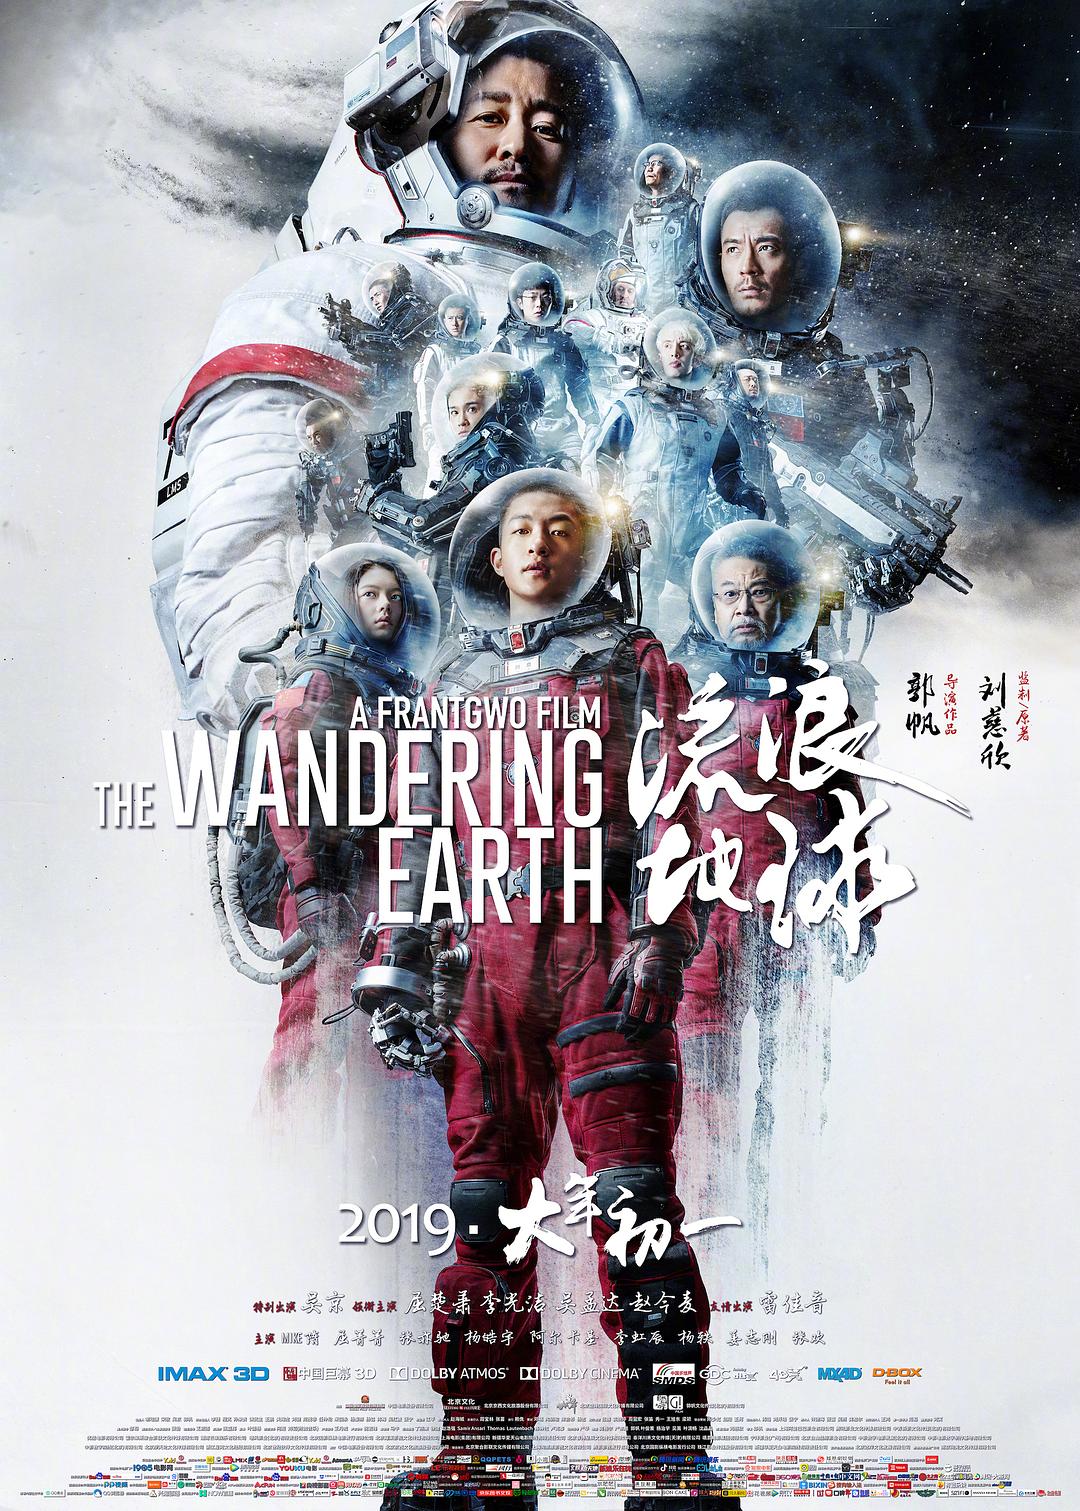 流浪地球 The.Wandering.Earth.2019.CHINESE.1080p.BluRay.AVC.TrueHD.7.1.Atmos-EvS 37.71GB-1.png